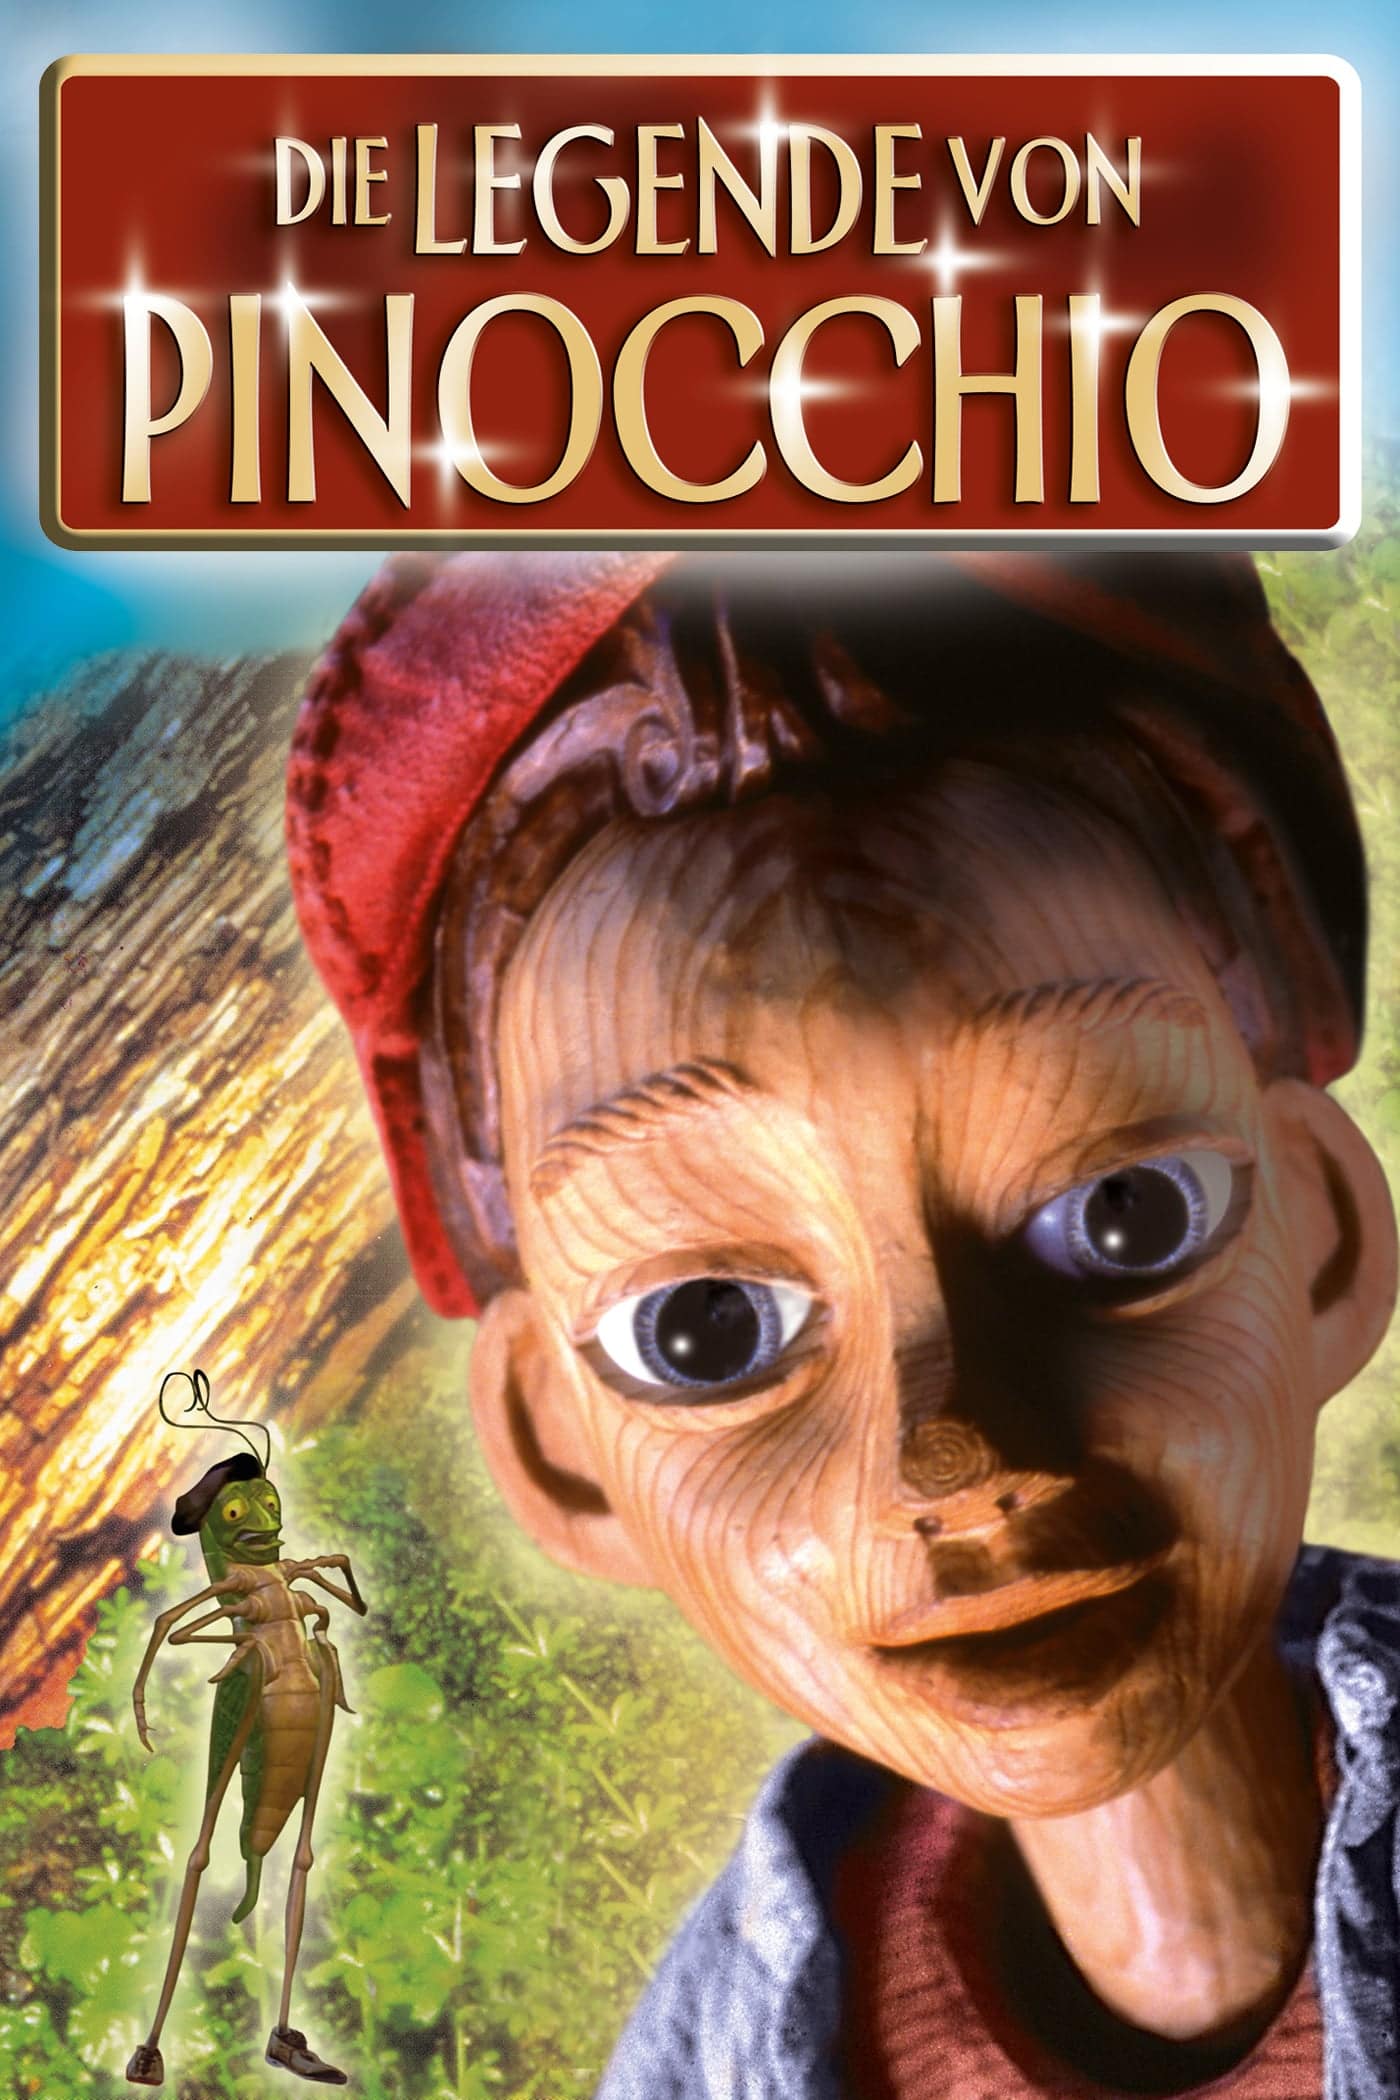 Plakat von "Die Legende von Pinocchio"